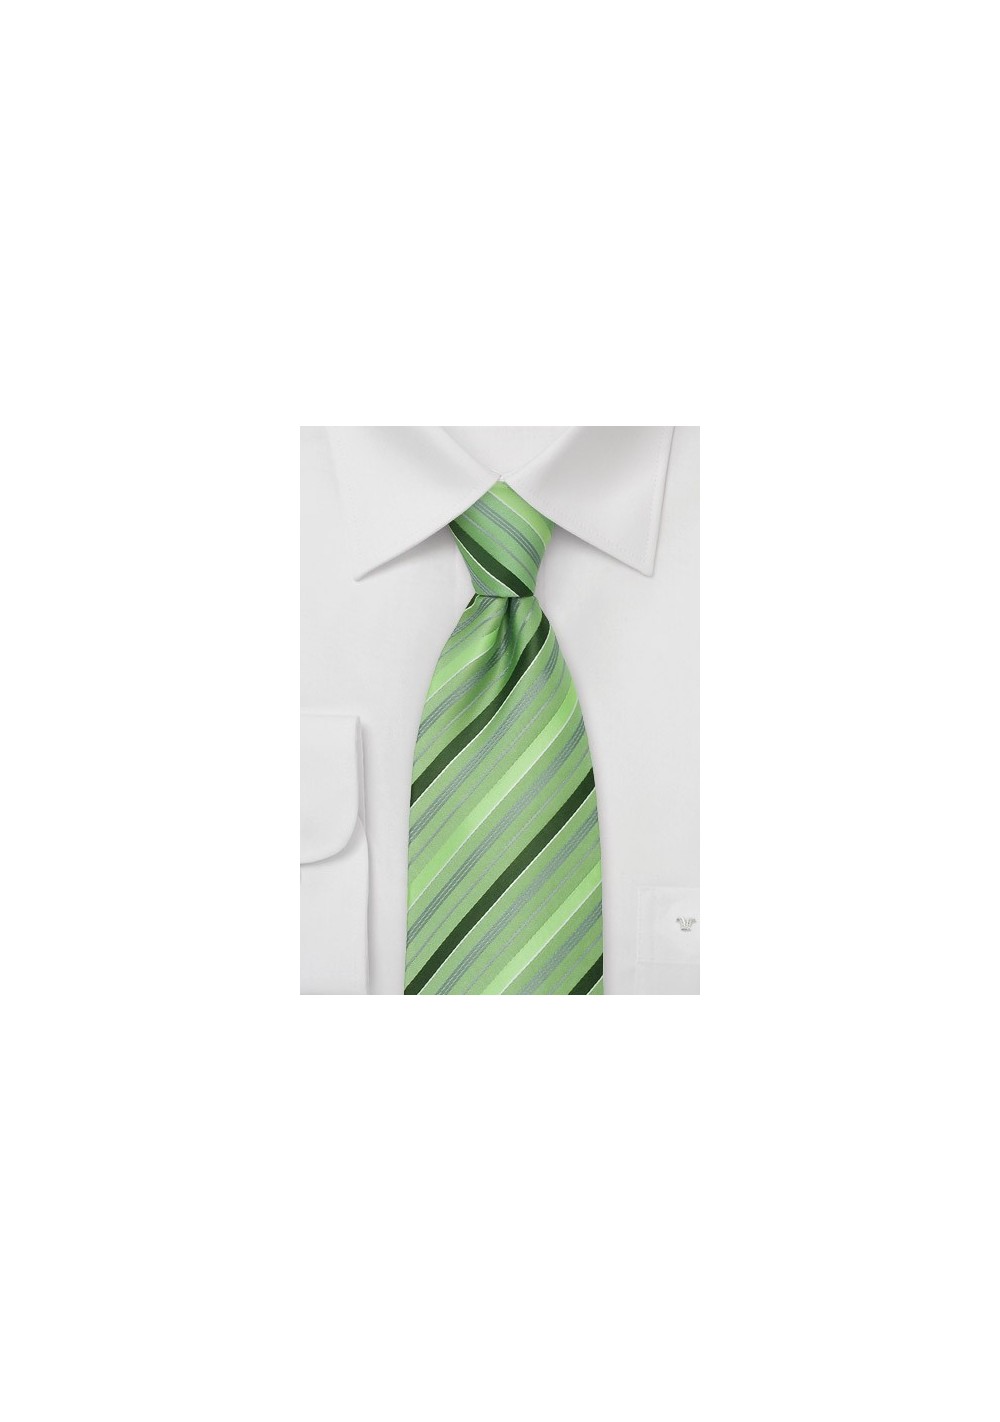 Moss Green Striped Necktie